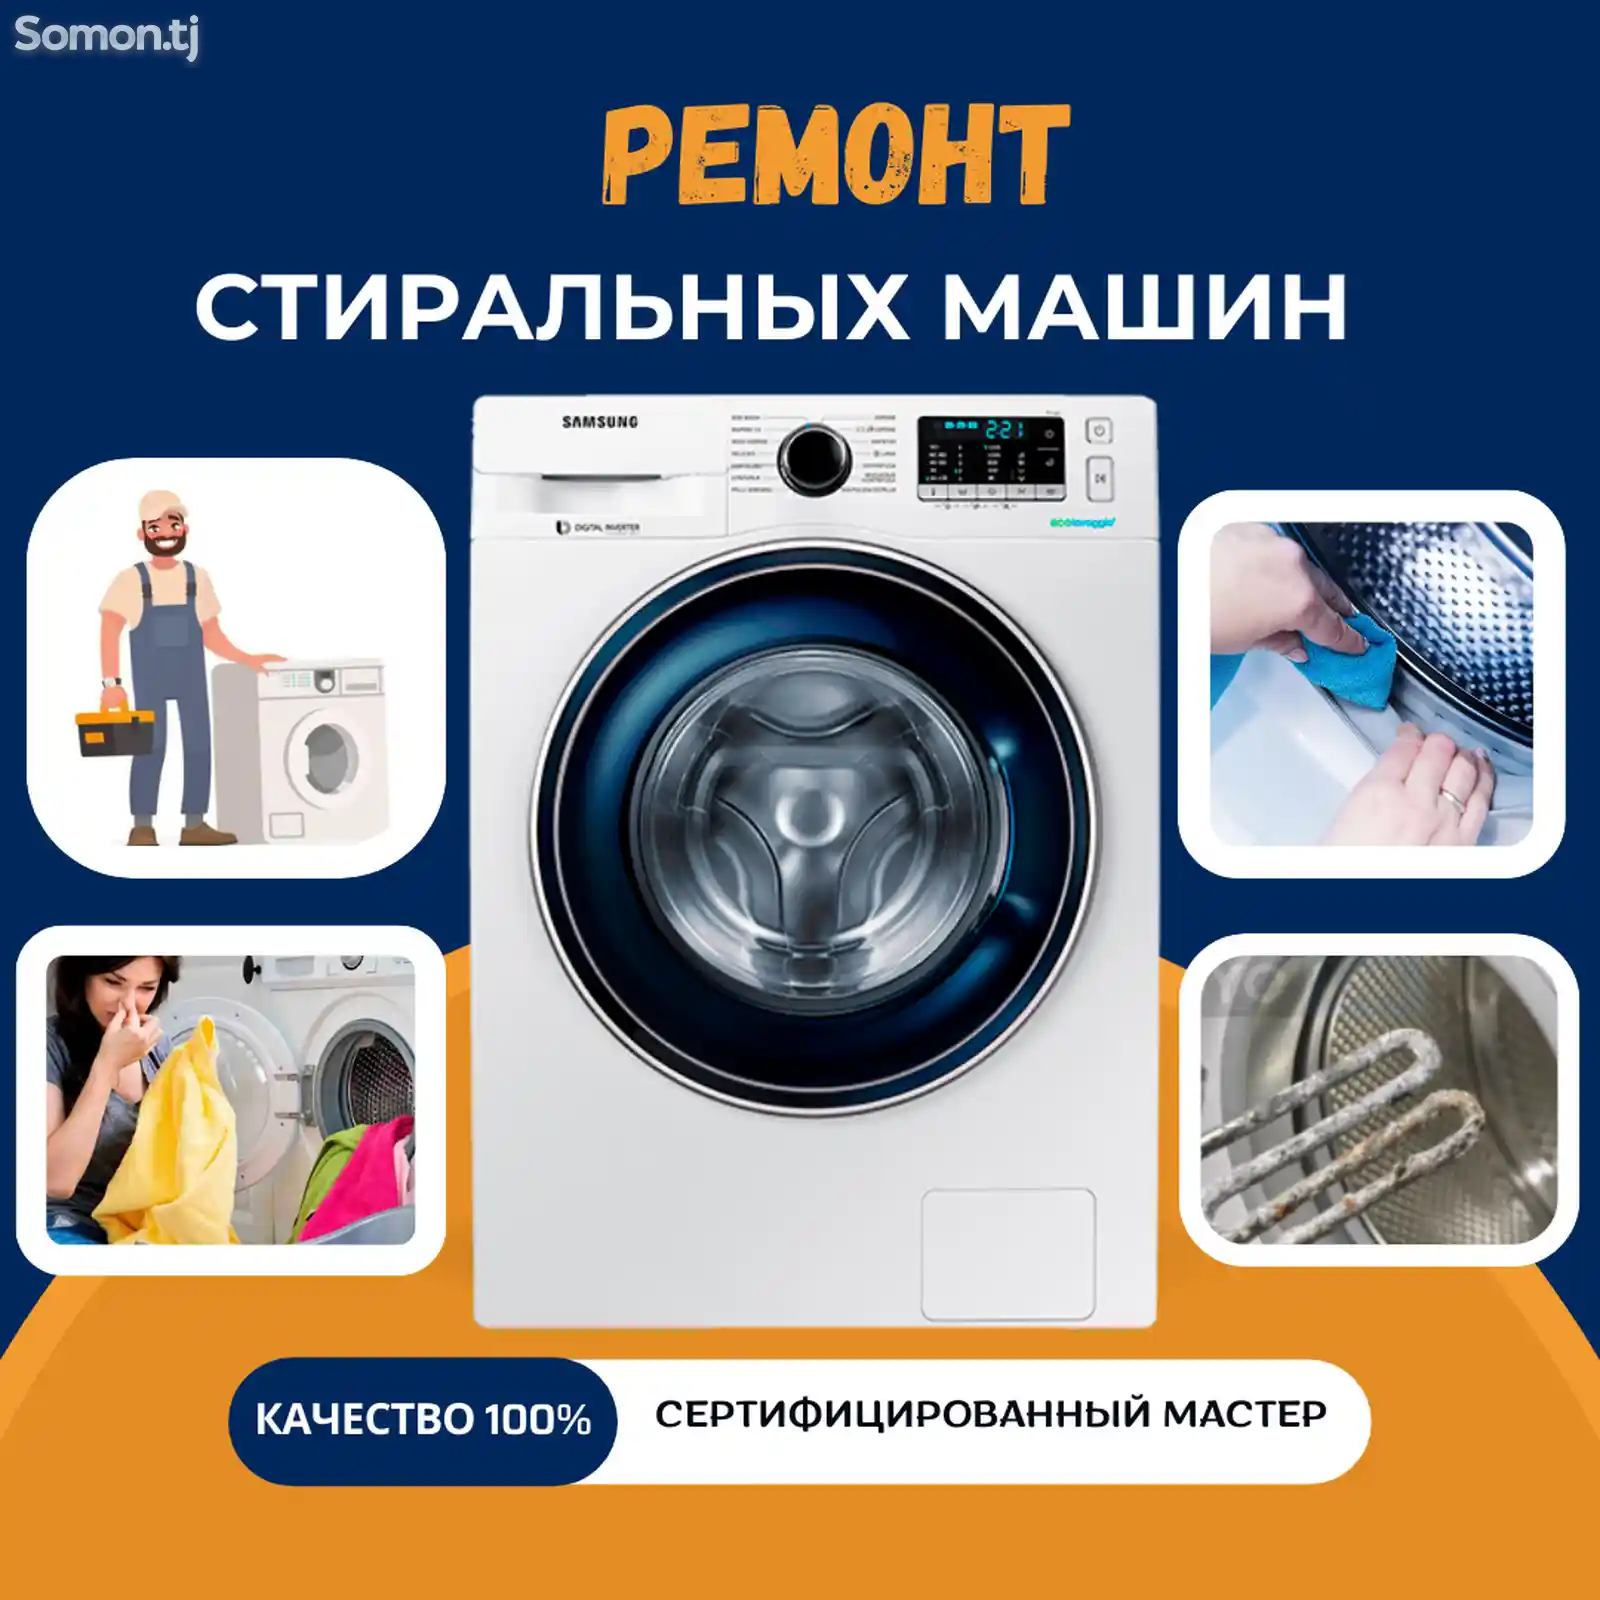 Ремонт стиральных машин на дому-1